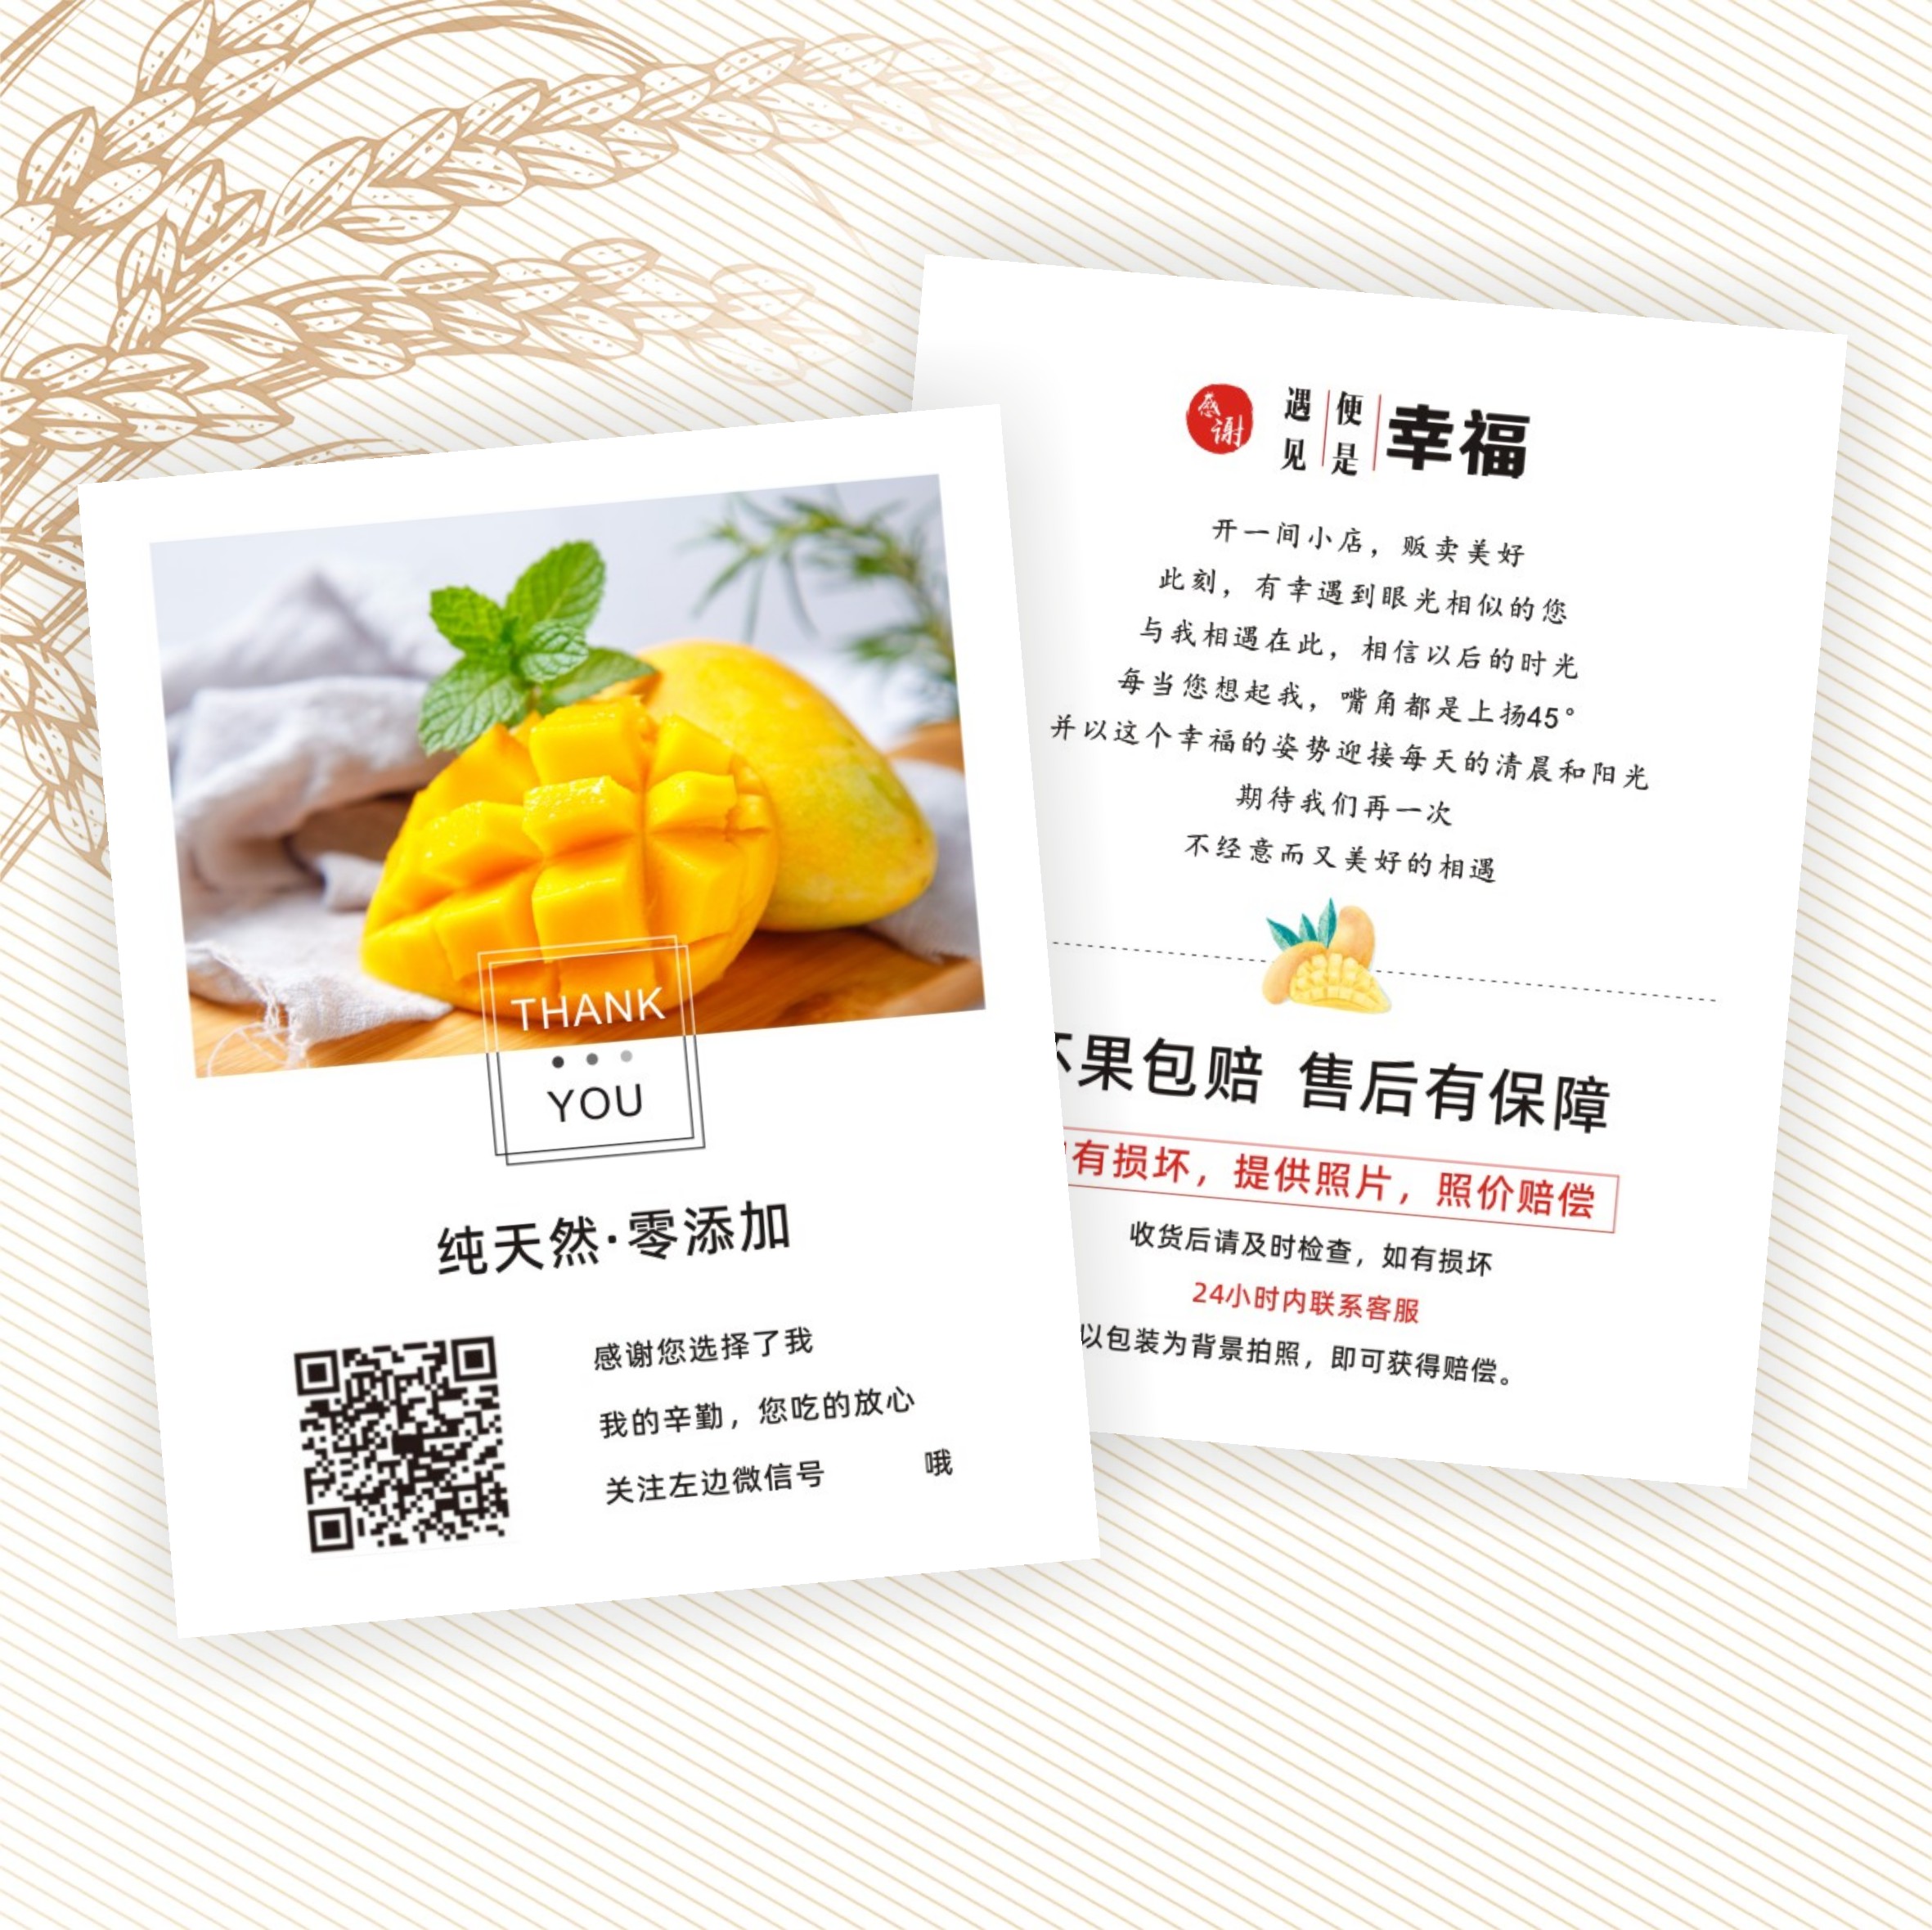 芒果桂七台农保存方式食用说明宣传温馨提示礼盒包装卡不干胶贴纸高性价比高么？